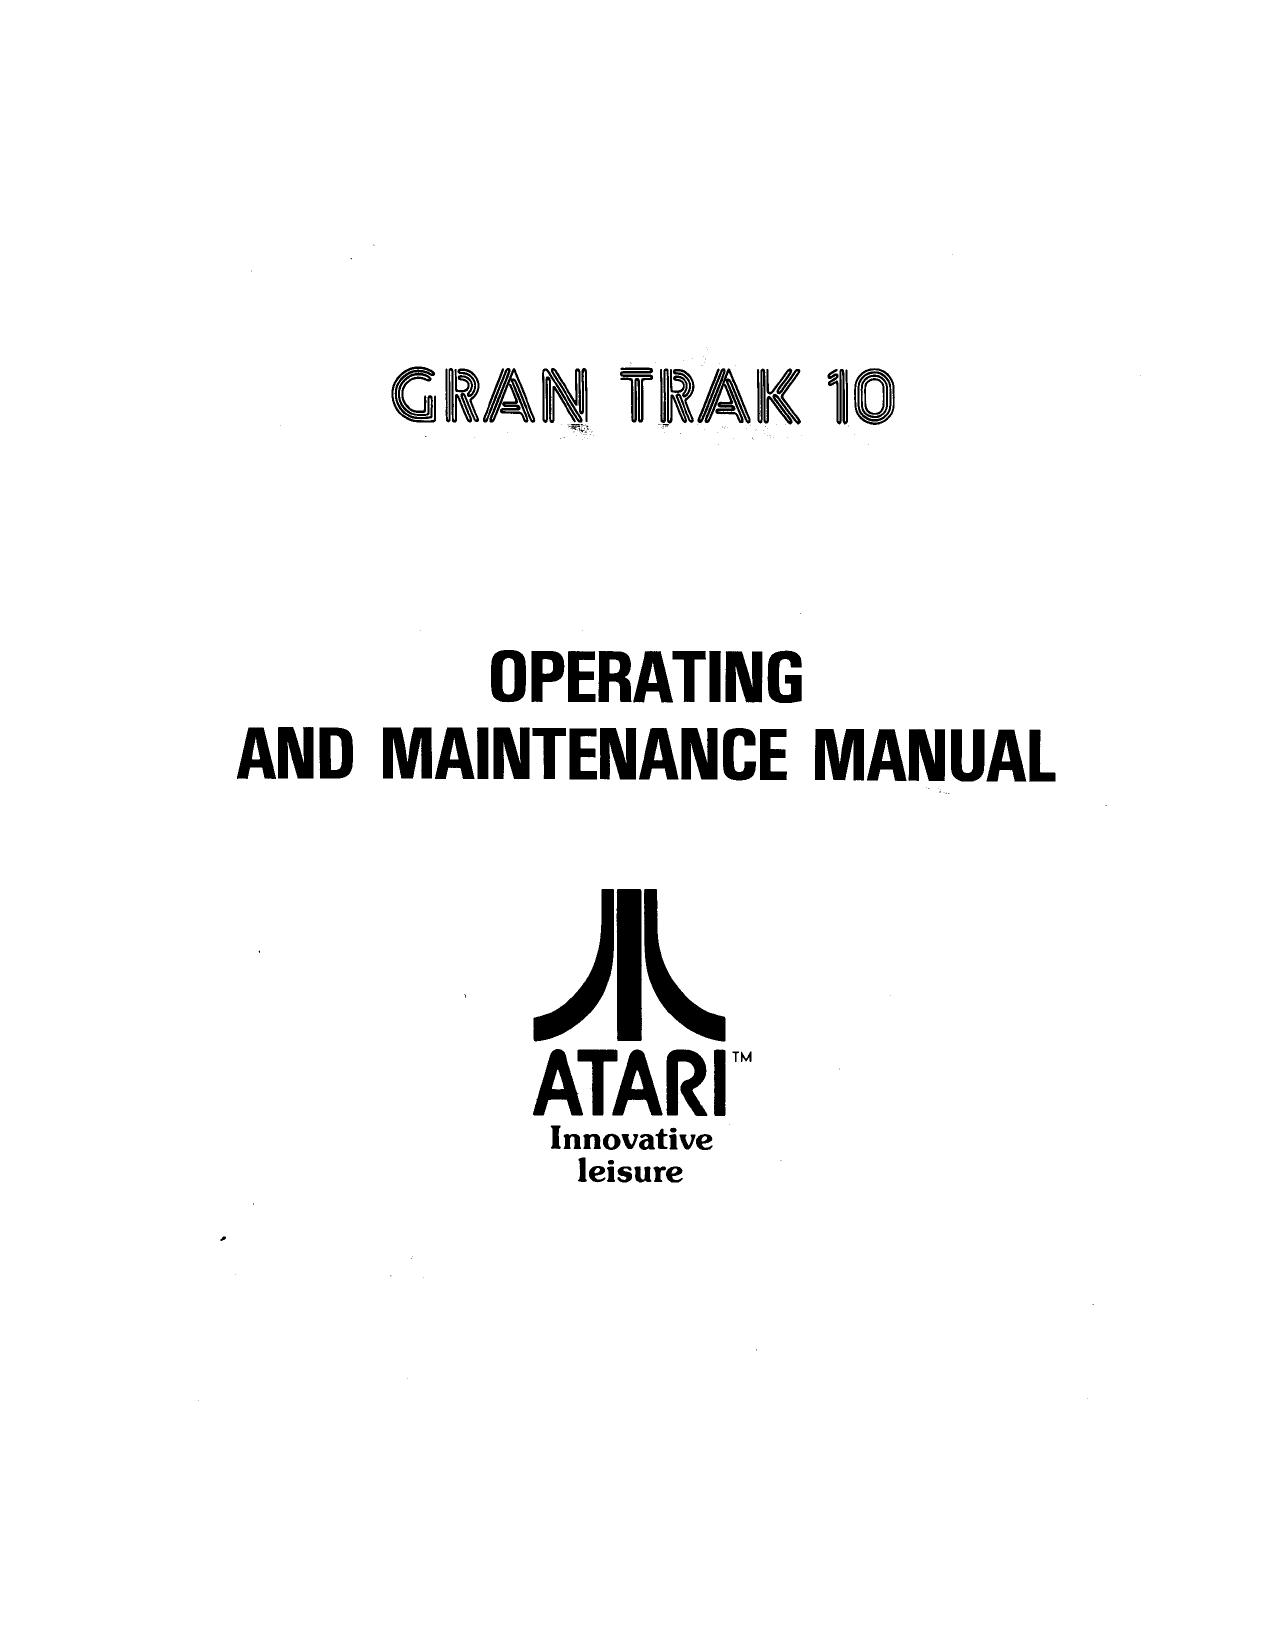 GranTrak10 Manual